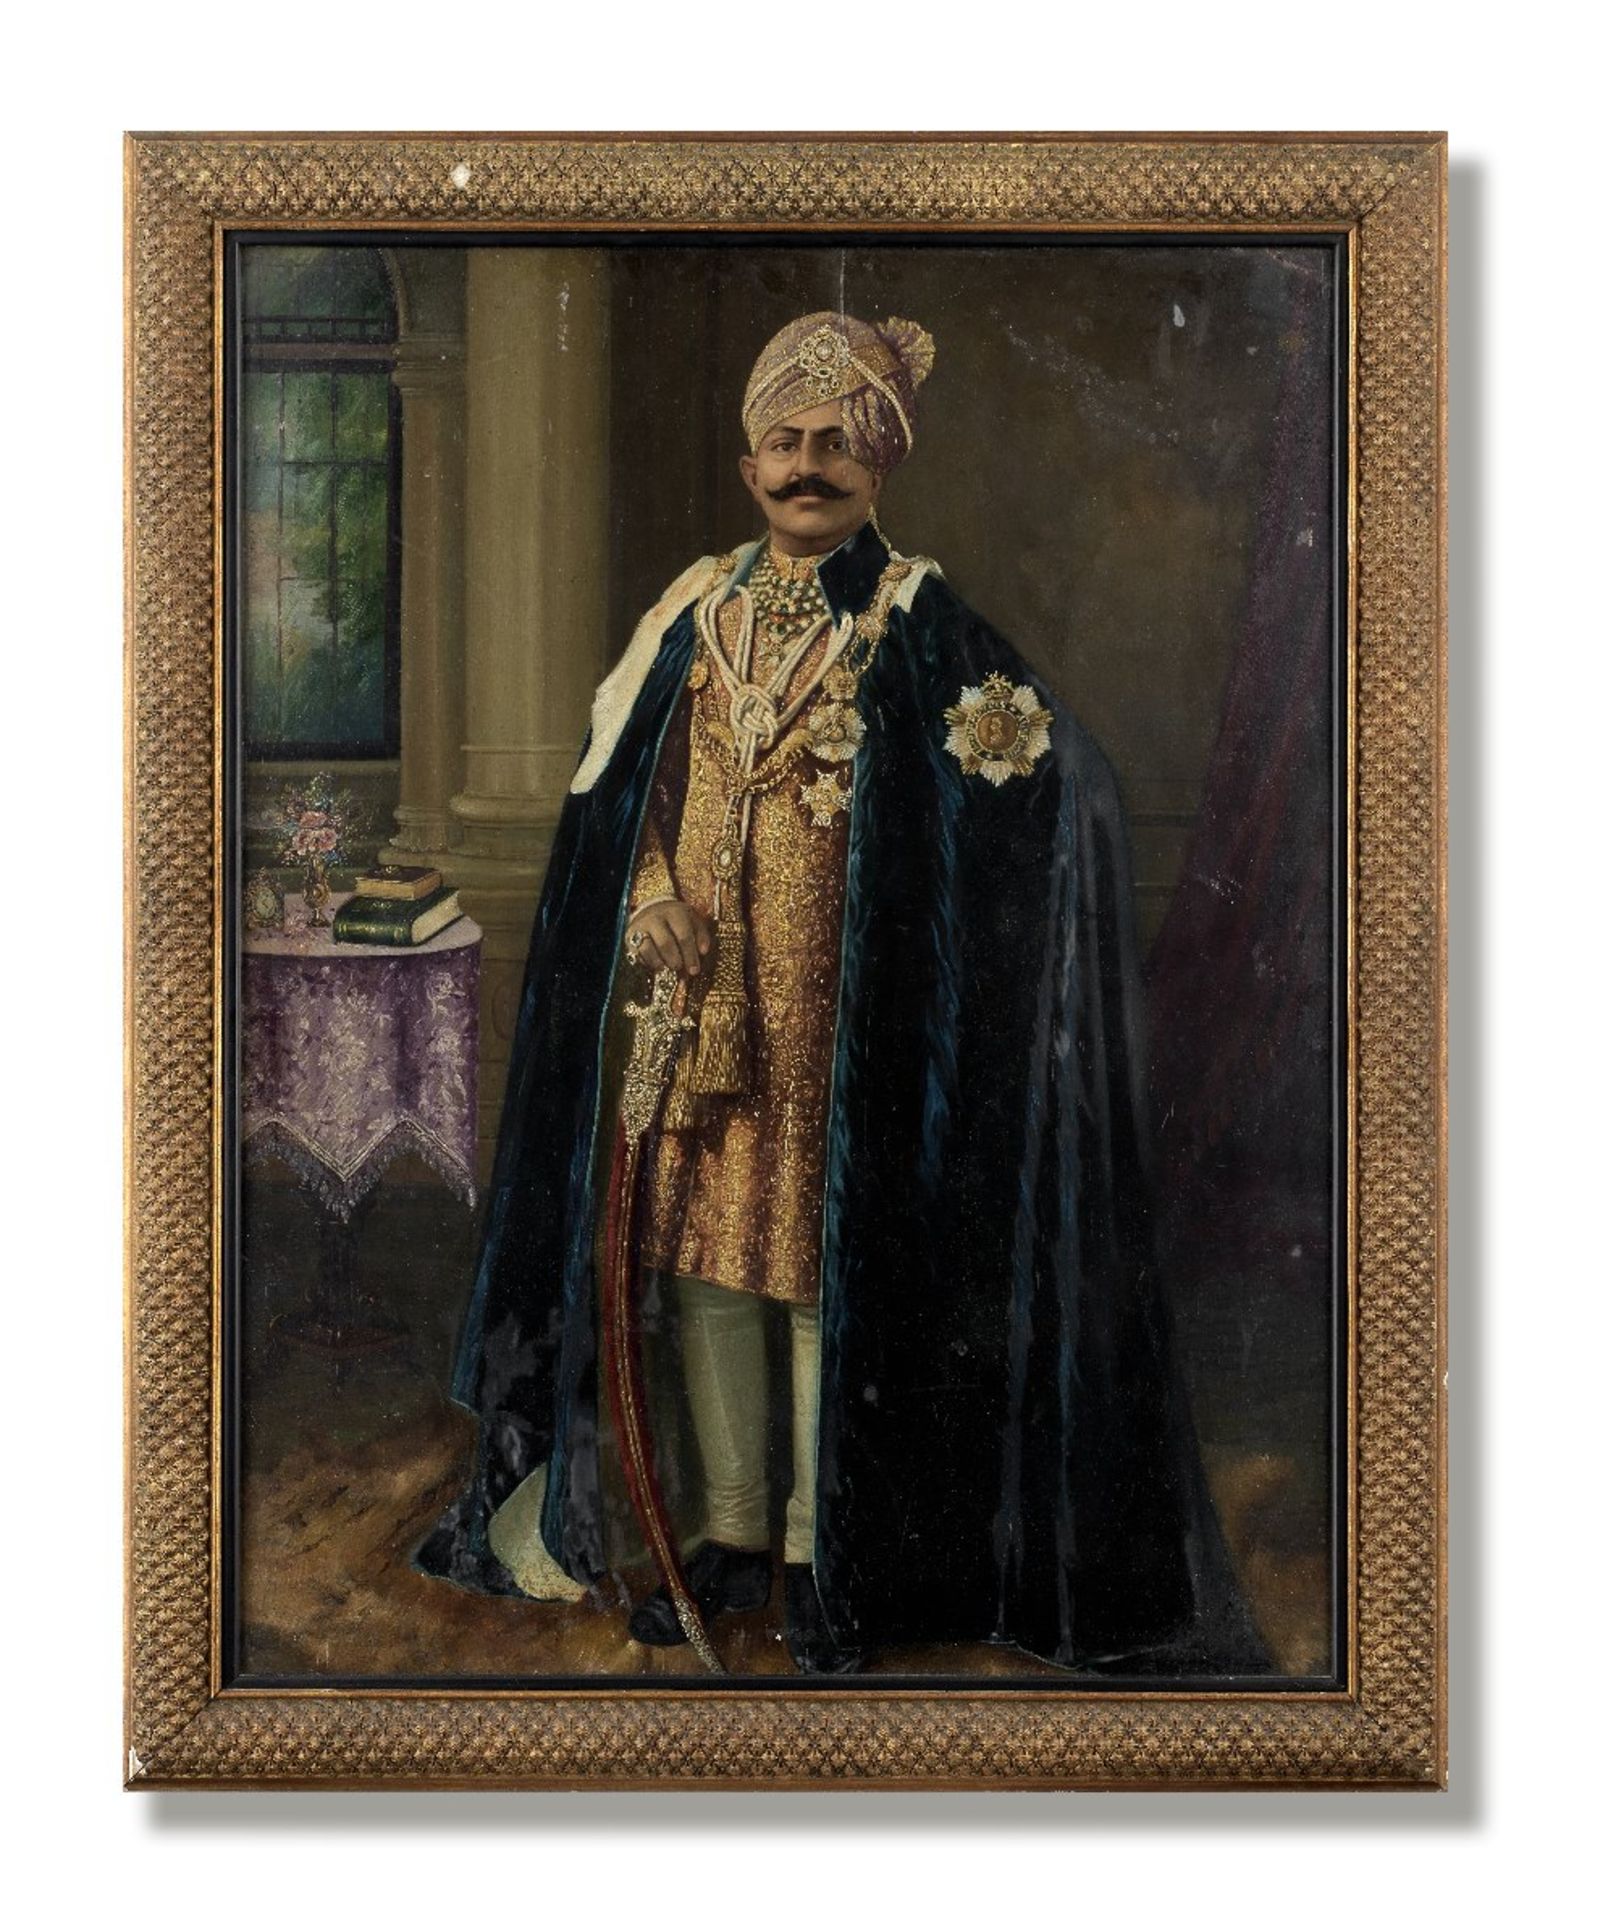 An Indian ruler, perhaps Maharajah Sir Ganga Singh of Bikaner (reg. 1888-1943), dressed in the r...